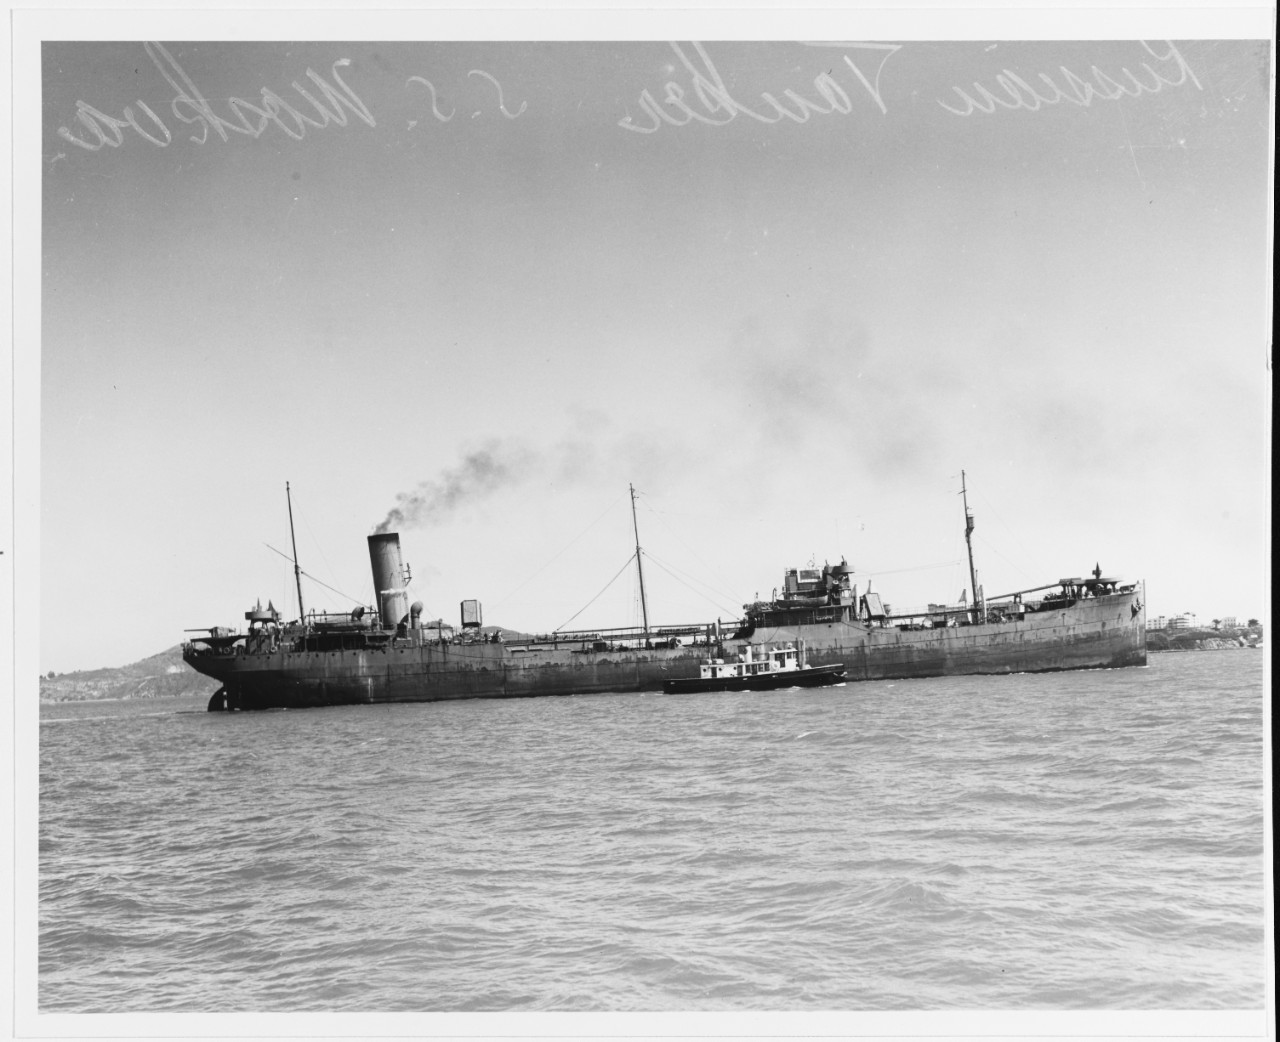 S.S. MOSKVA (U.S.S.R. Merchant Tanker, 1932-1973)